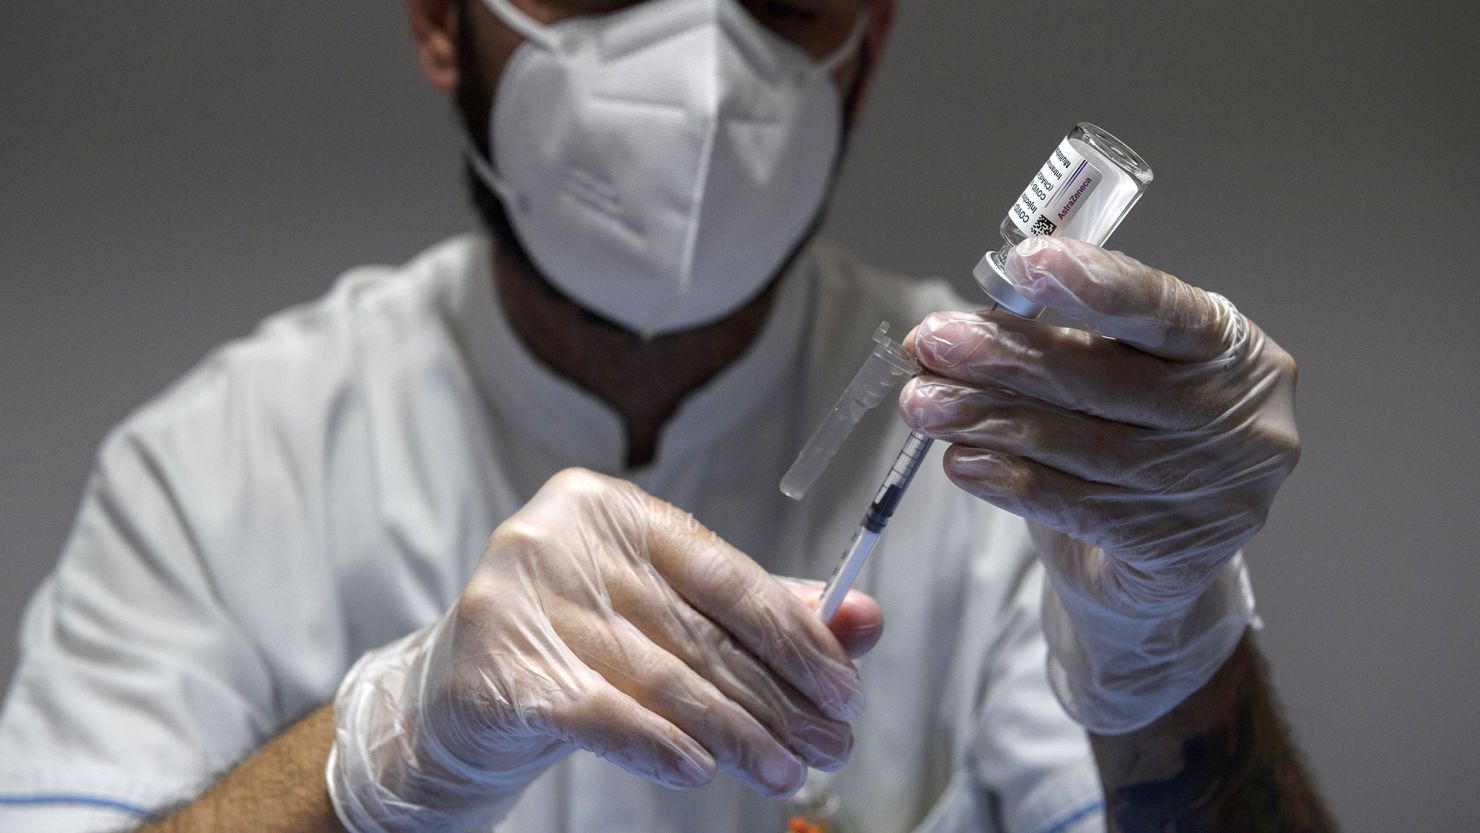 A health care worker prepares doses of the AstraZeneca Covid-19 vaccine at a vaccine hub in the Auditorium della Tecnica in Rome in June 2021.